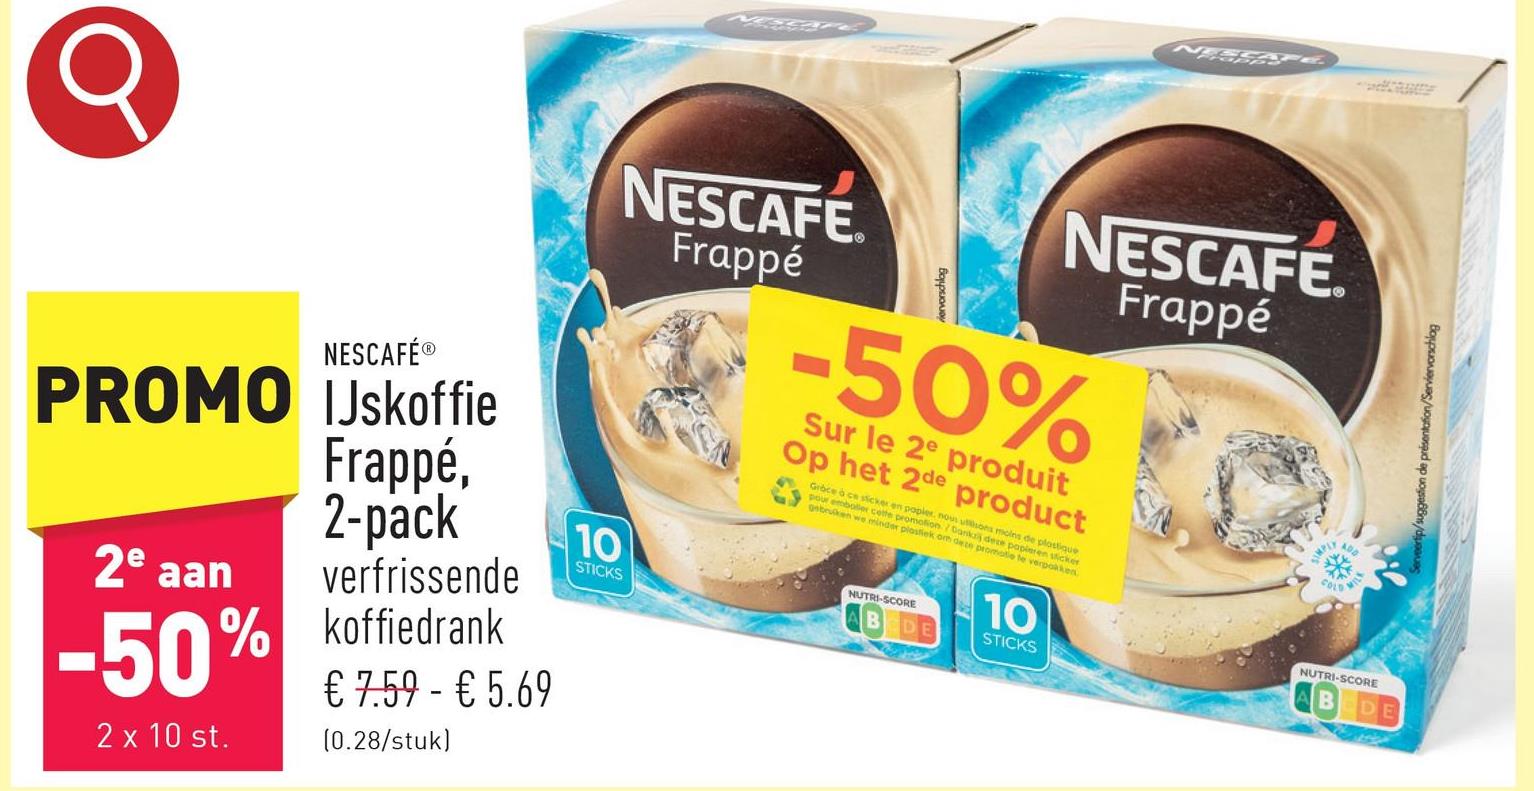 IJskoffie Frappé, 2-pack verfrissende koffiedrank, 2 x 10 sticks